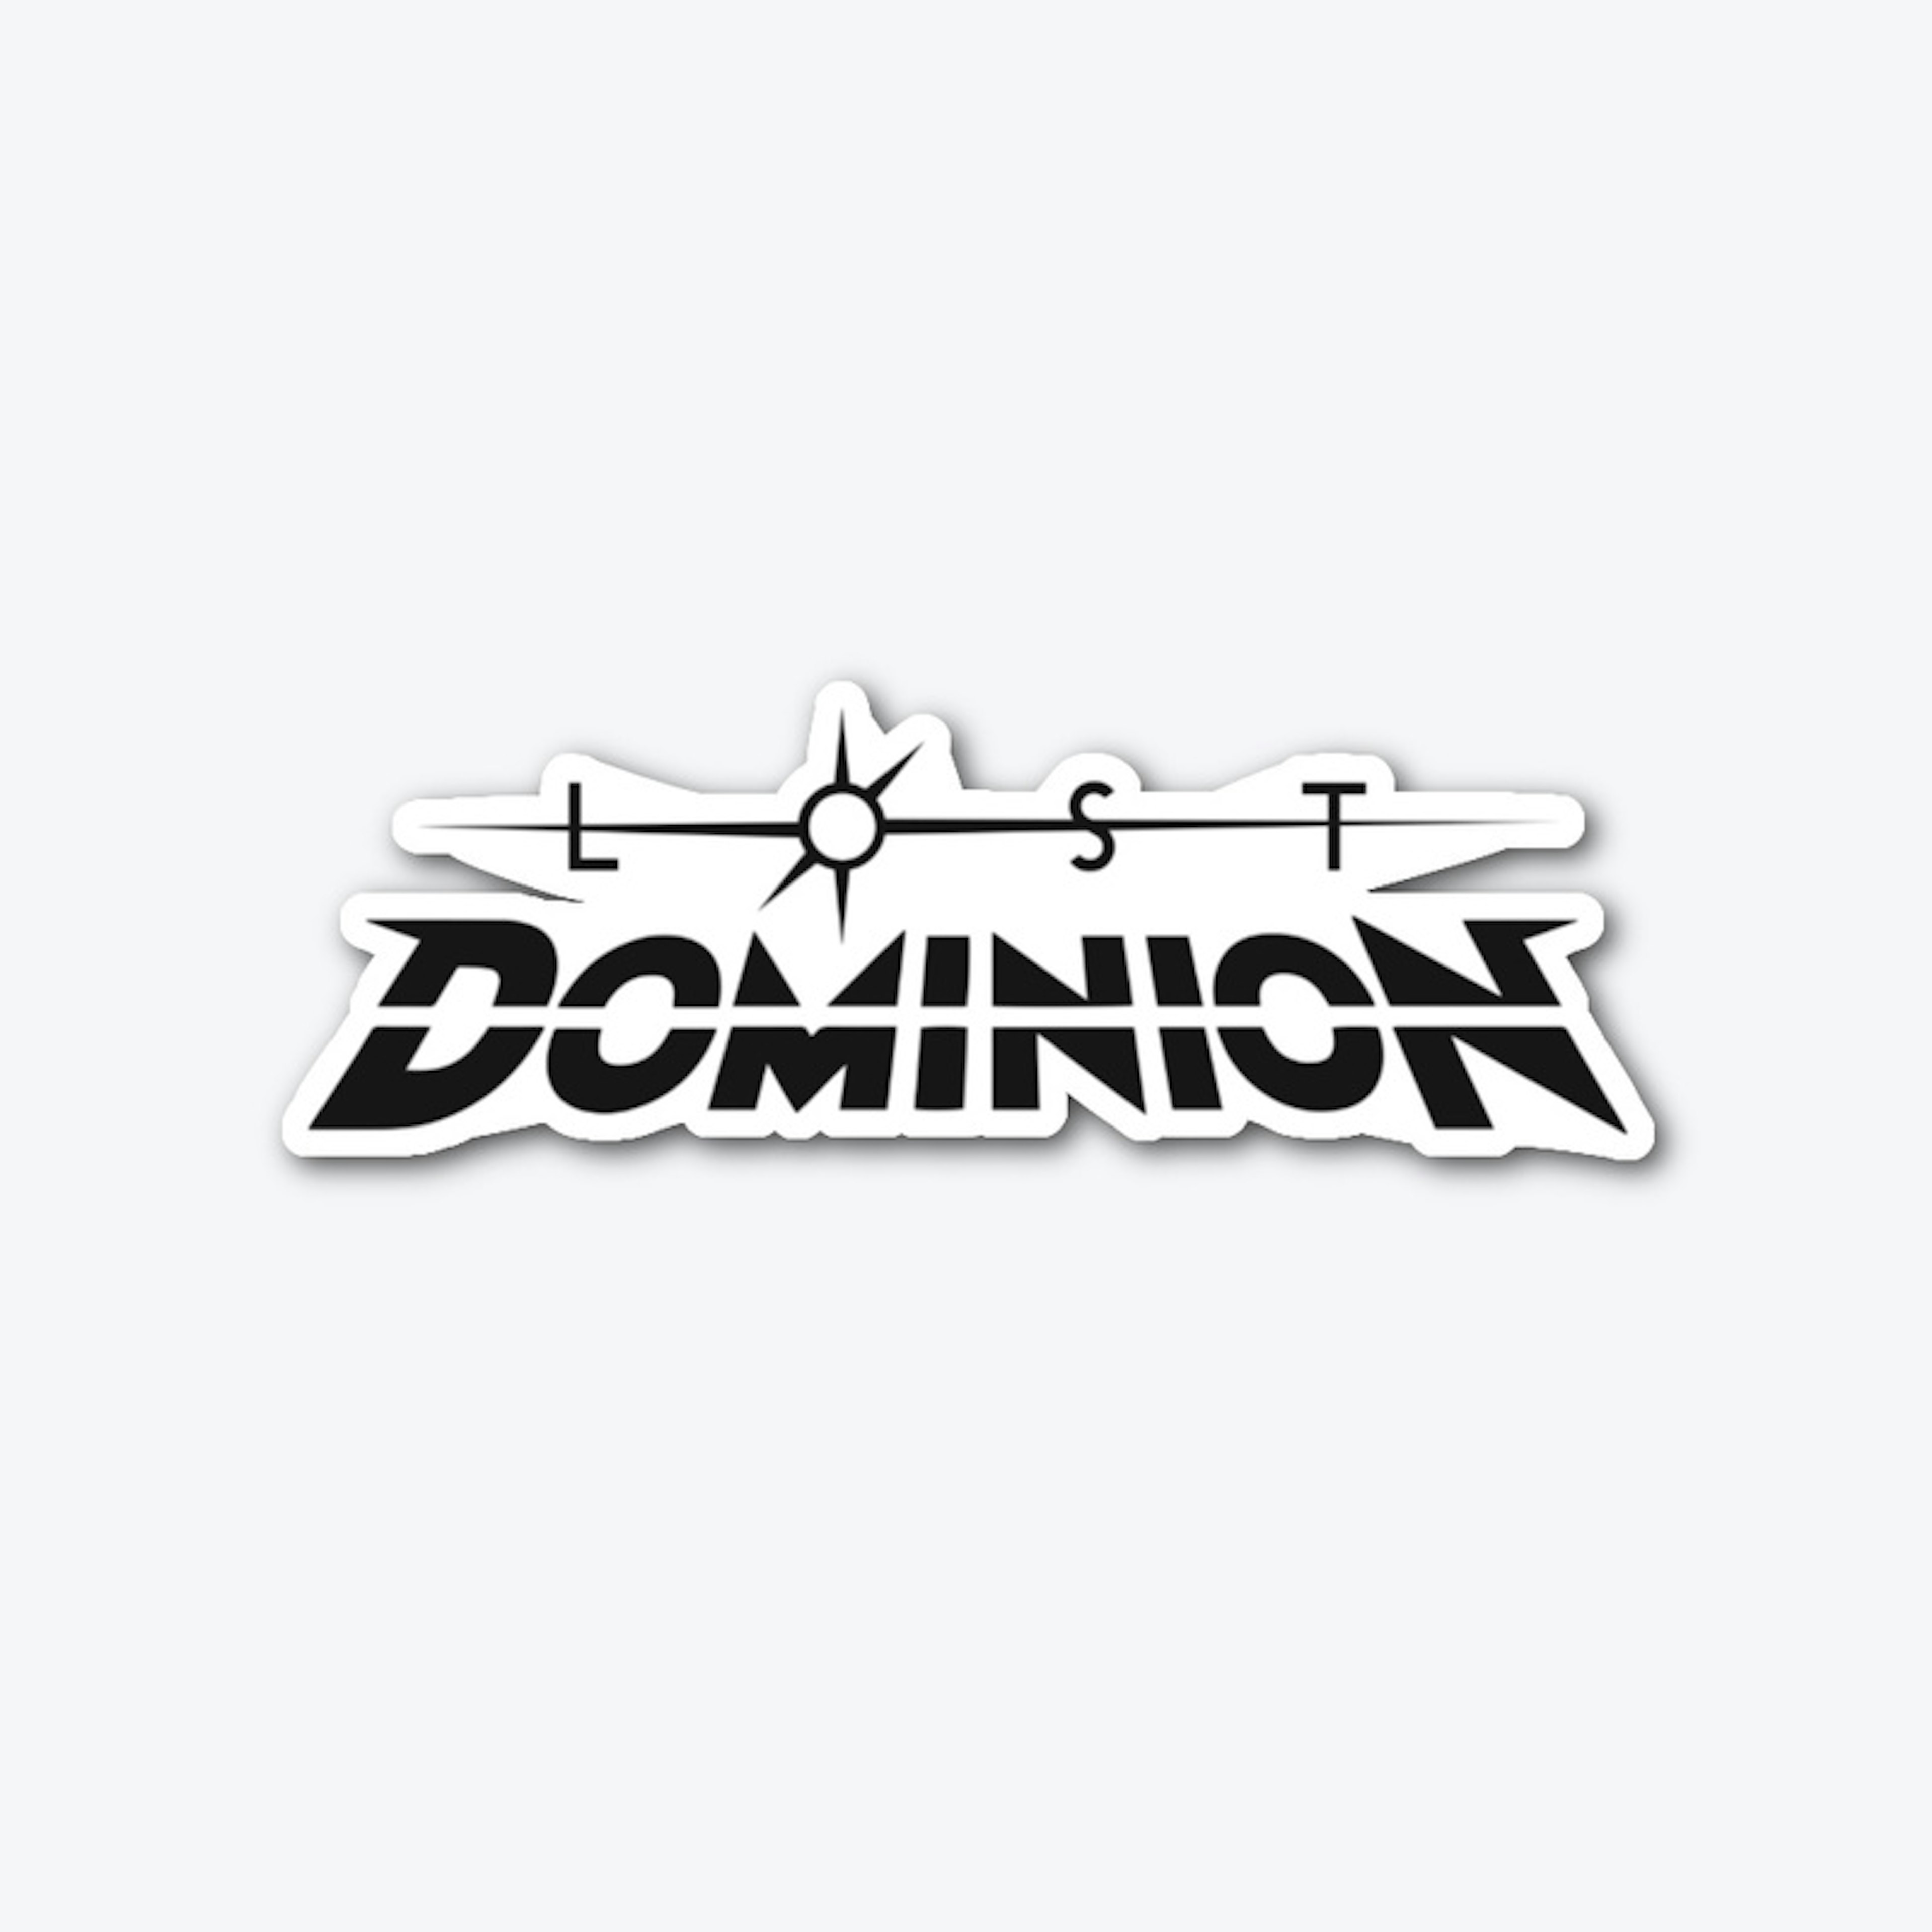 Lost Dominion logo sticker